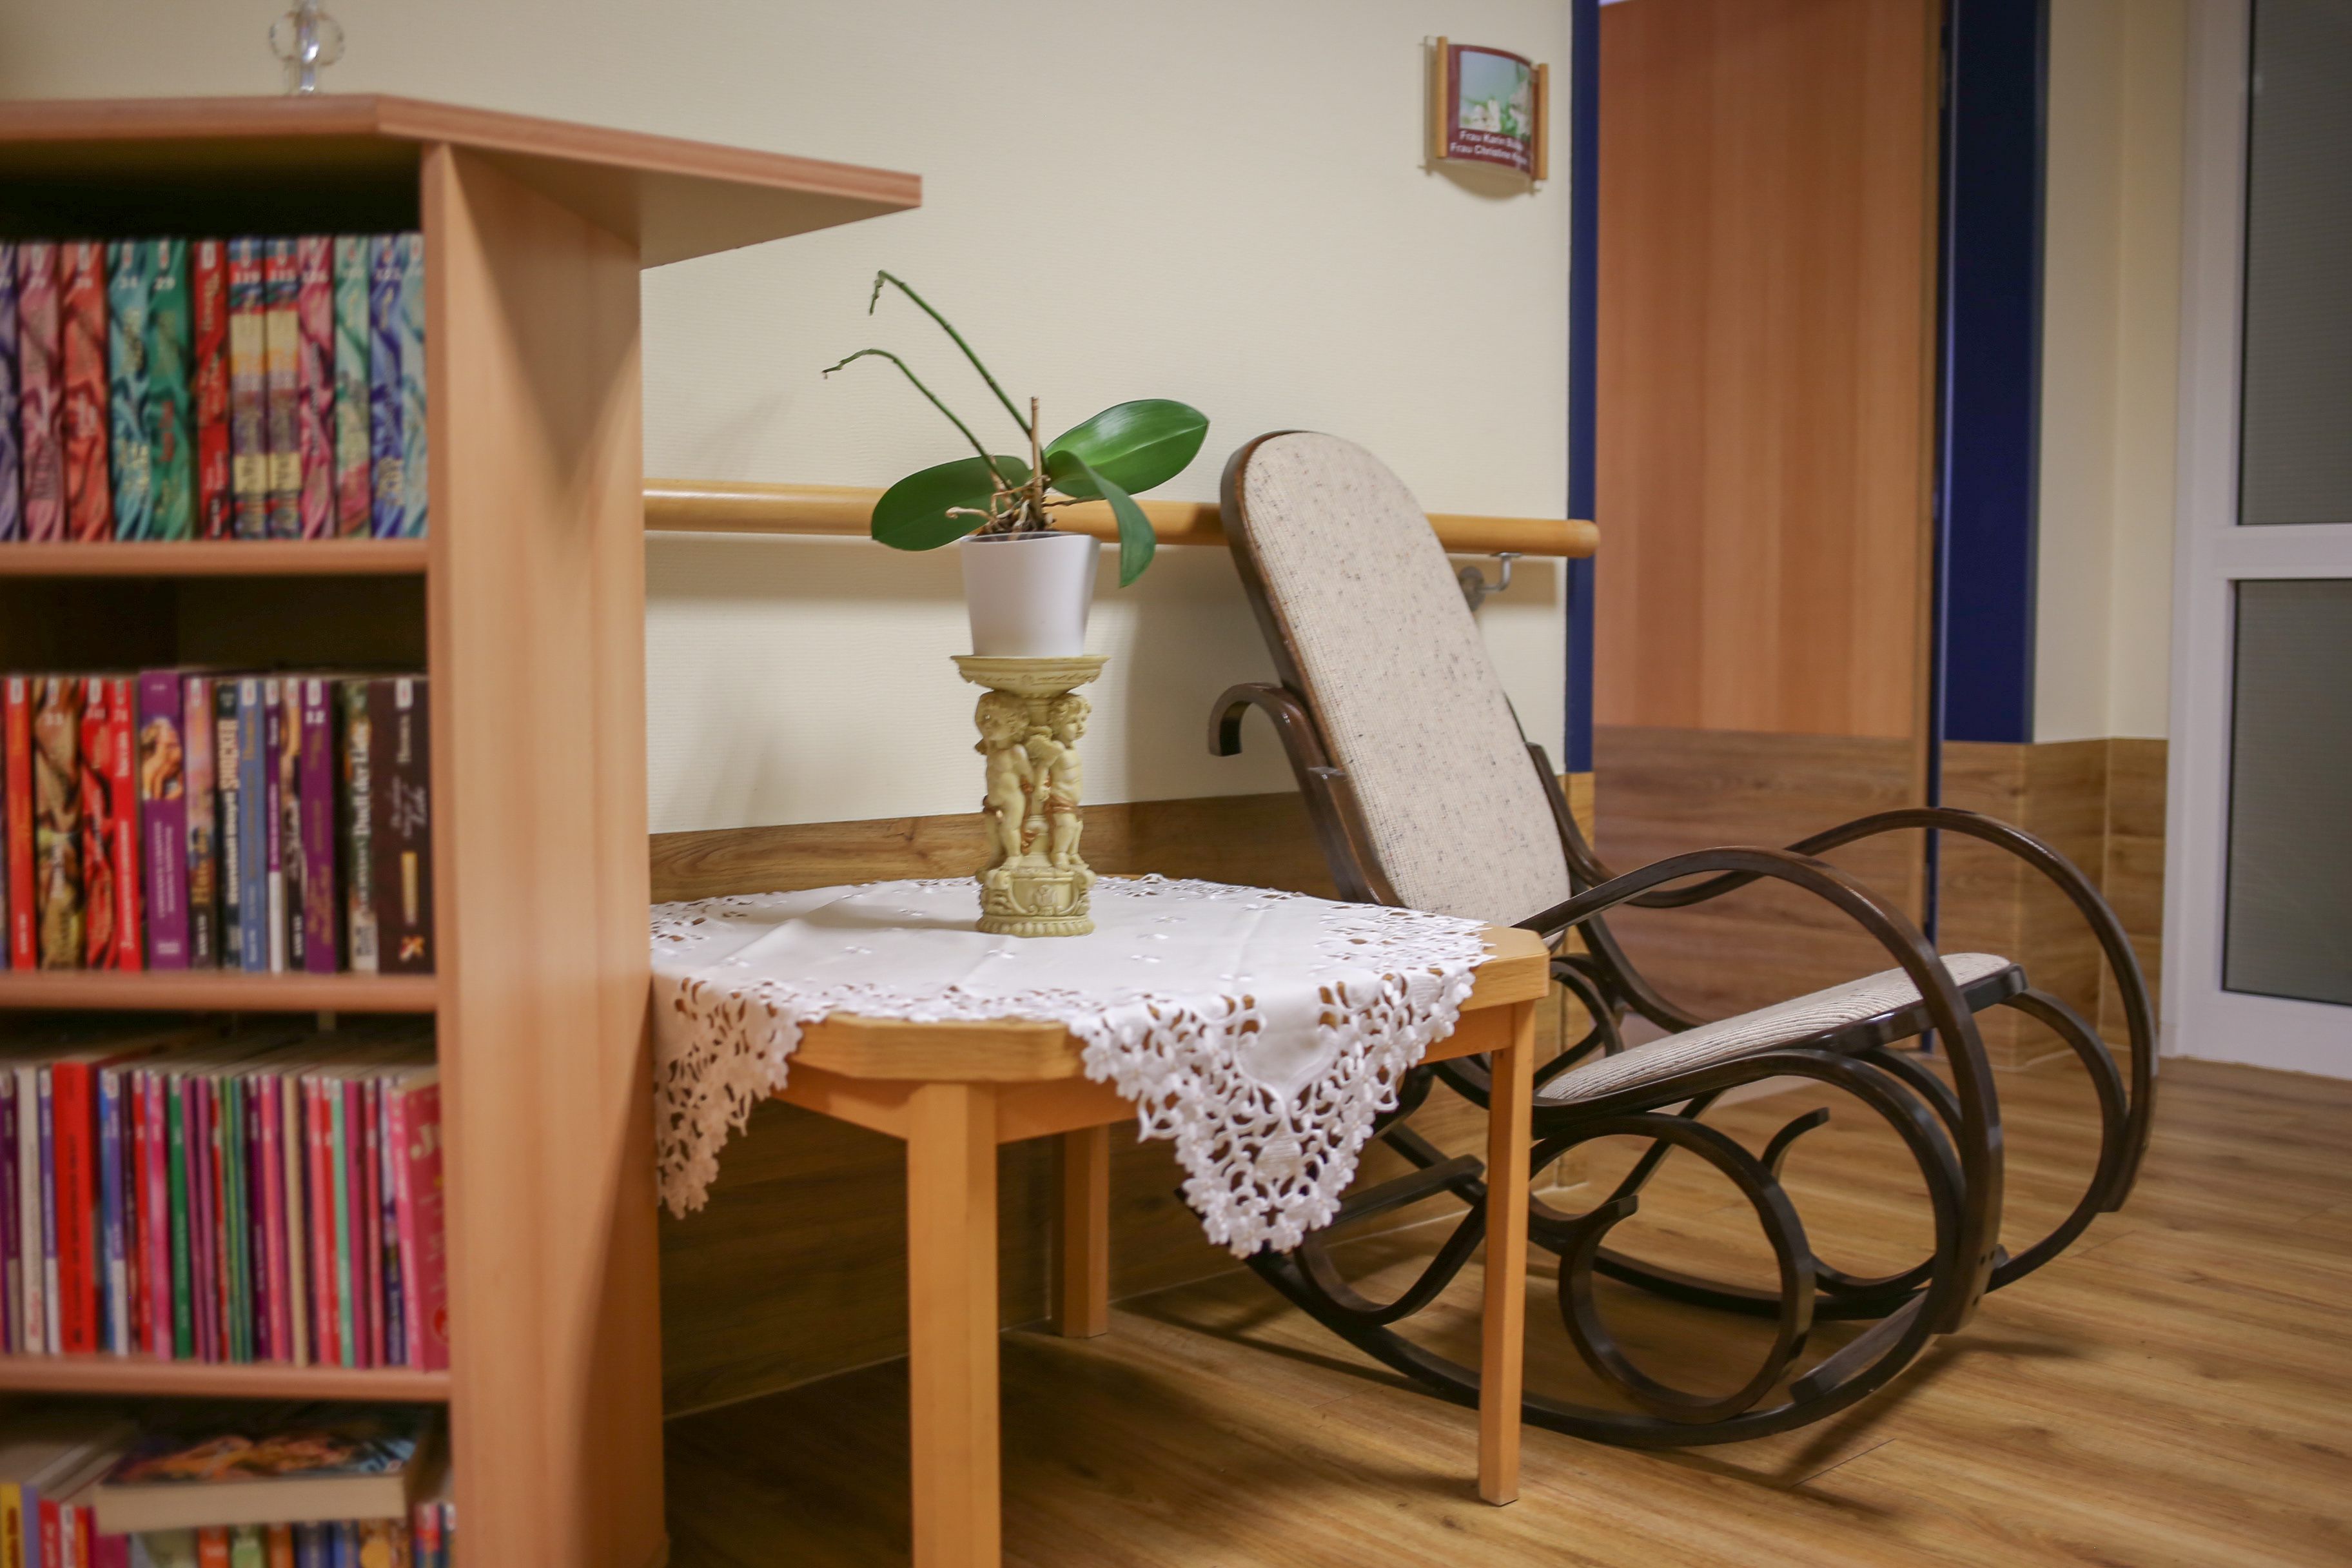 Ein Bücherregal als kleiner Raumtrenner, dahinter ein kleiner Tisch mit Grünpflanze and am Tisch ein Schaukelstuhl